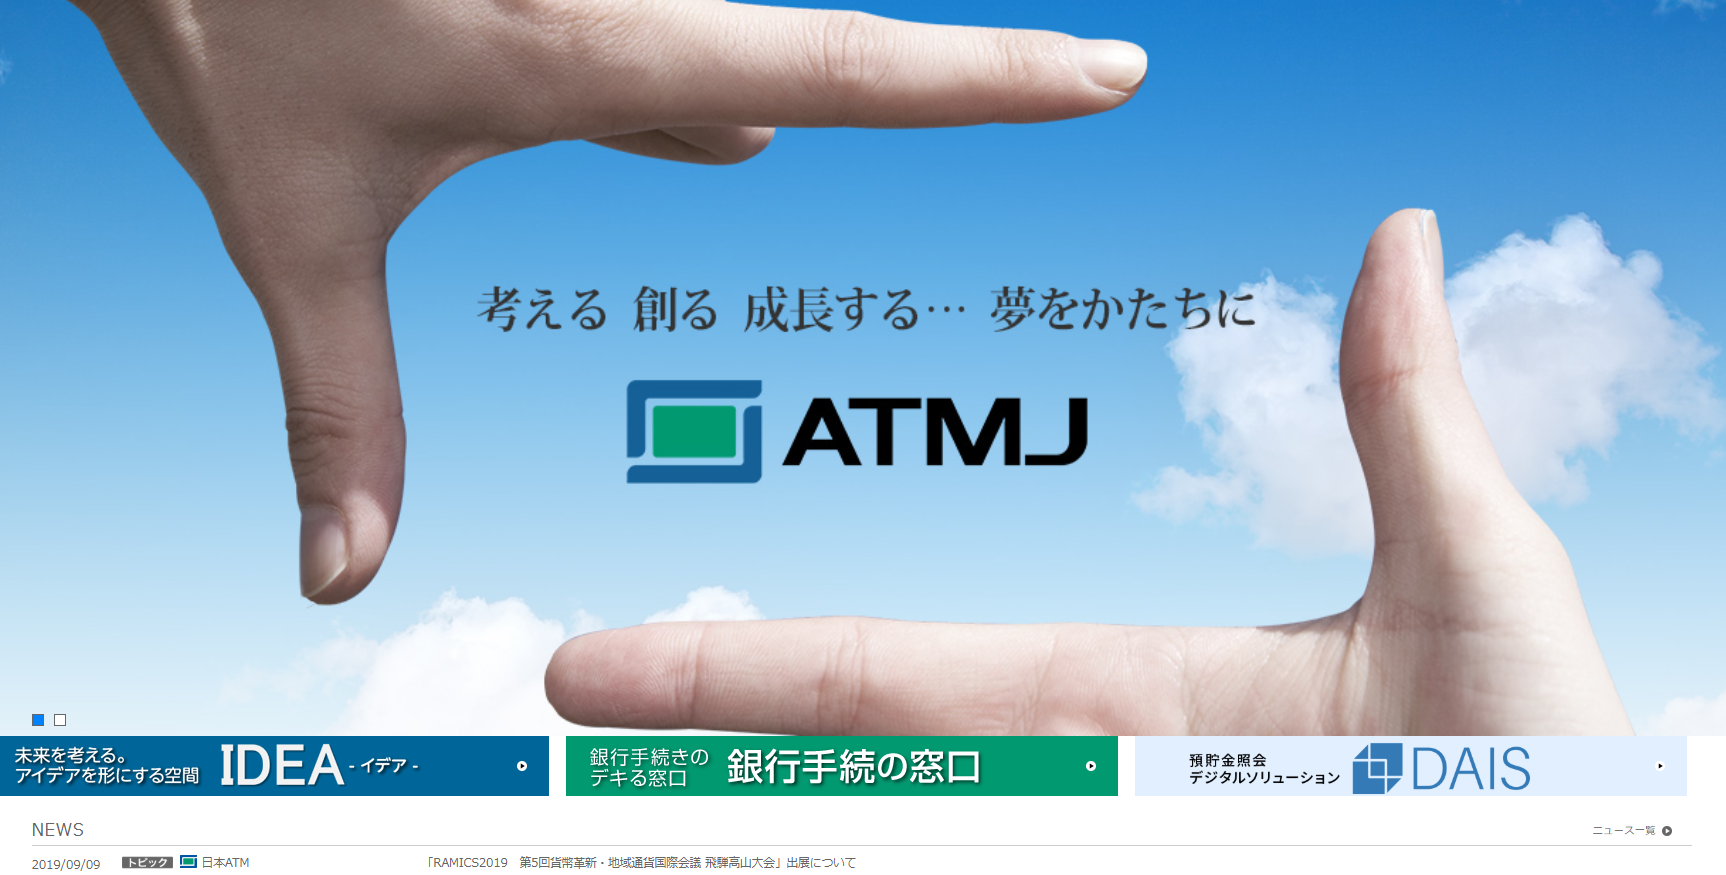 日本ATMヒューマン・ソリューション株式会社の日本ATMヒューマン・ソリューション株式会社サービス